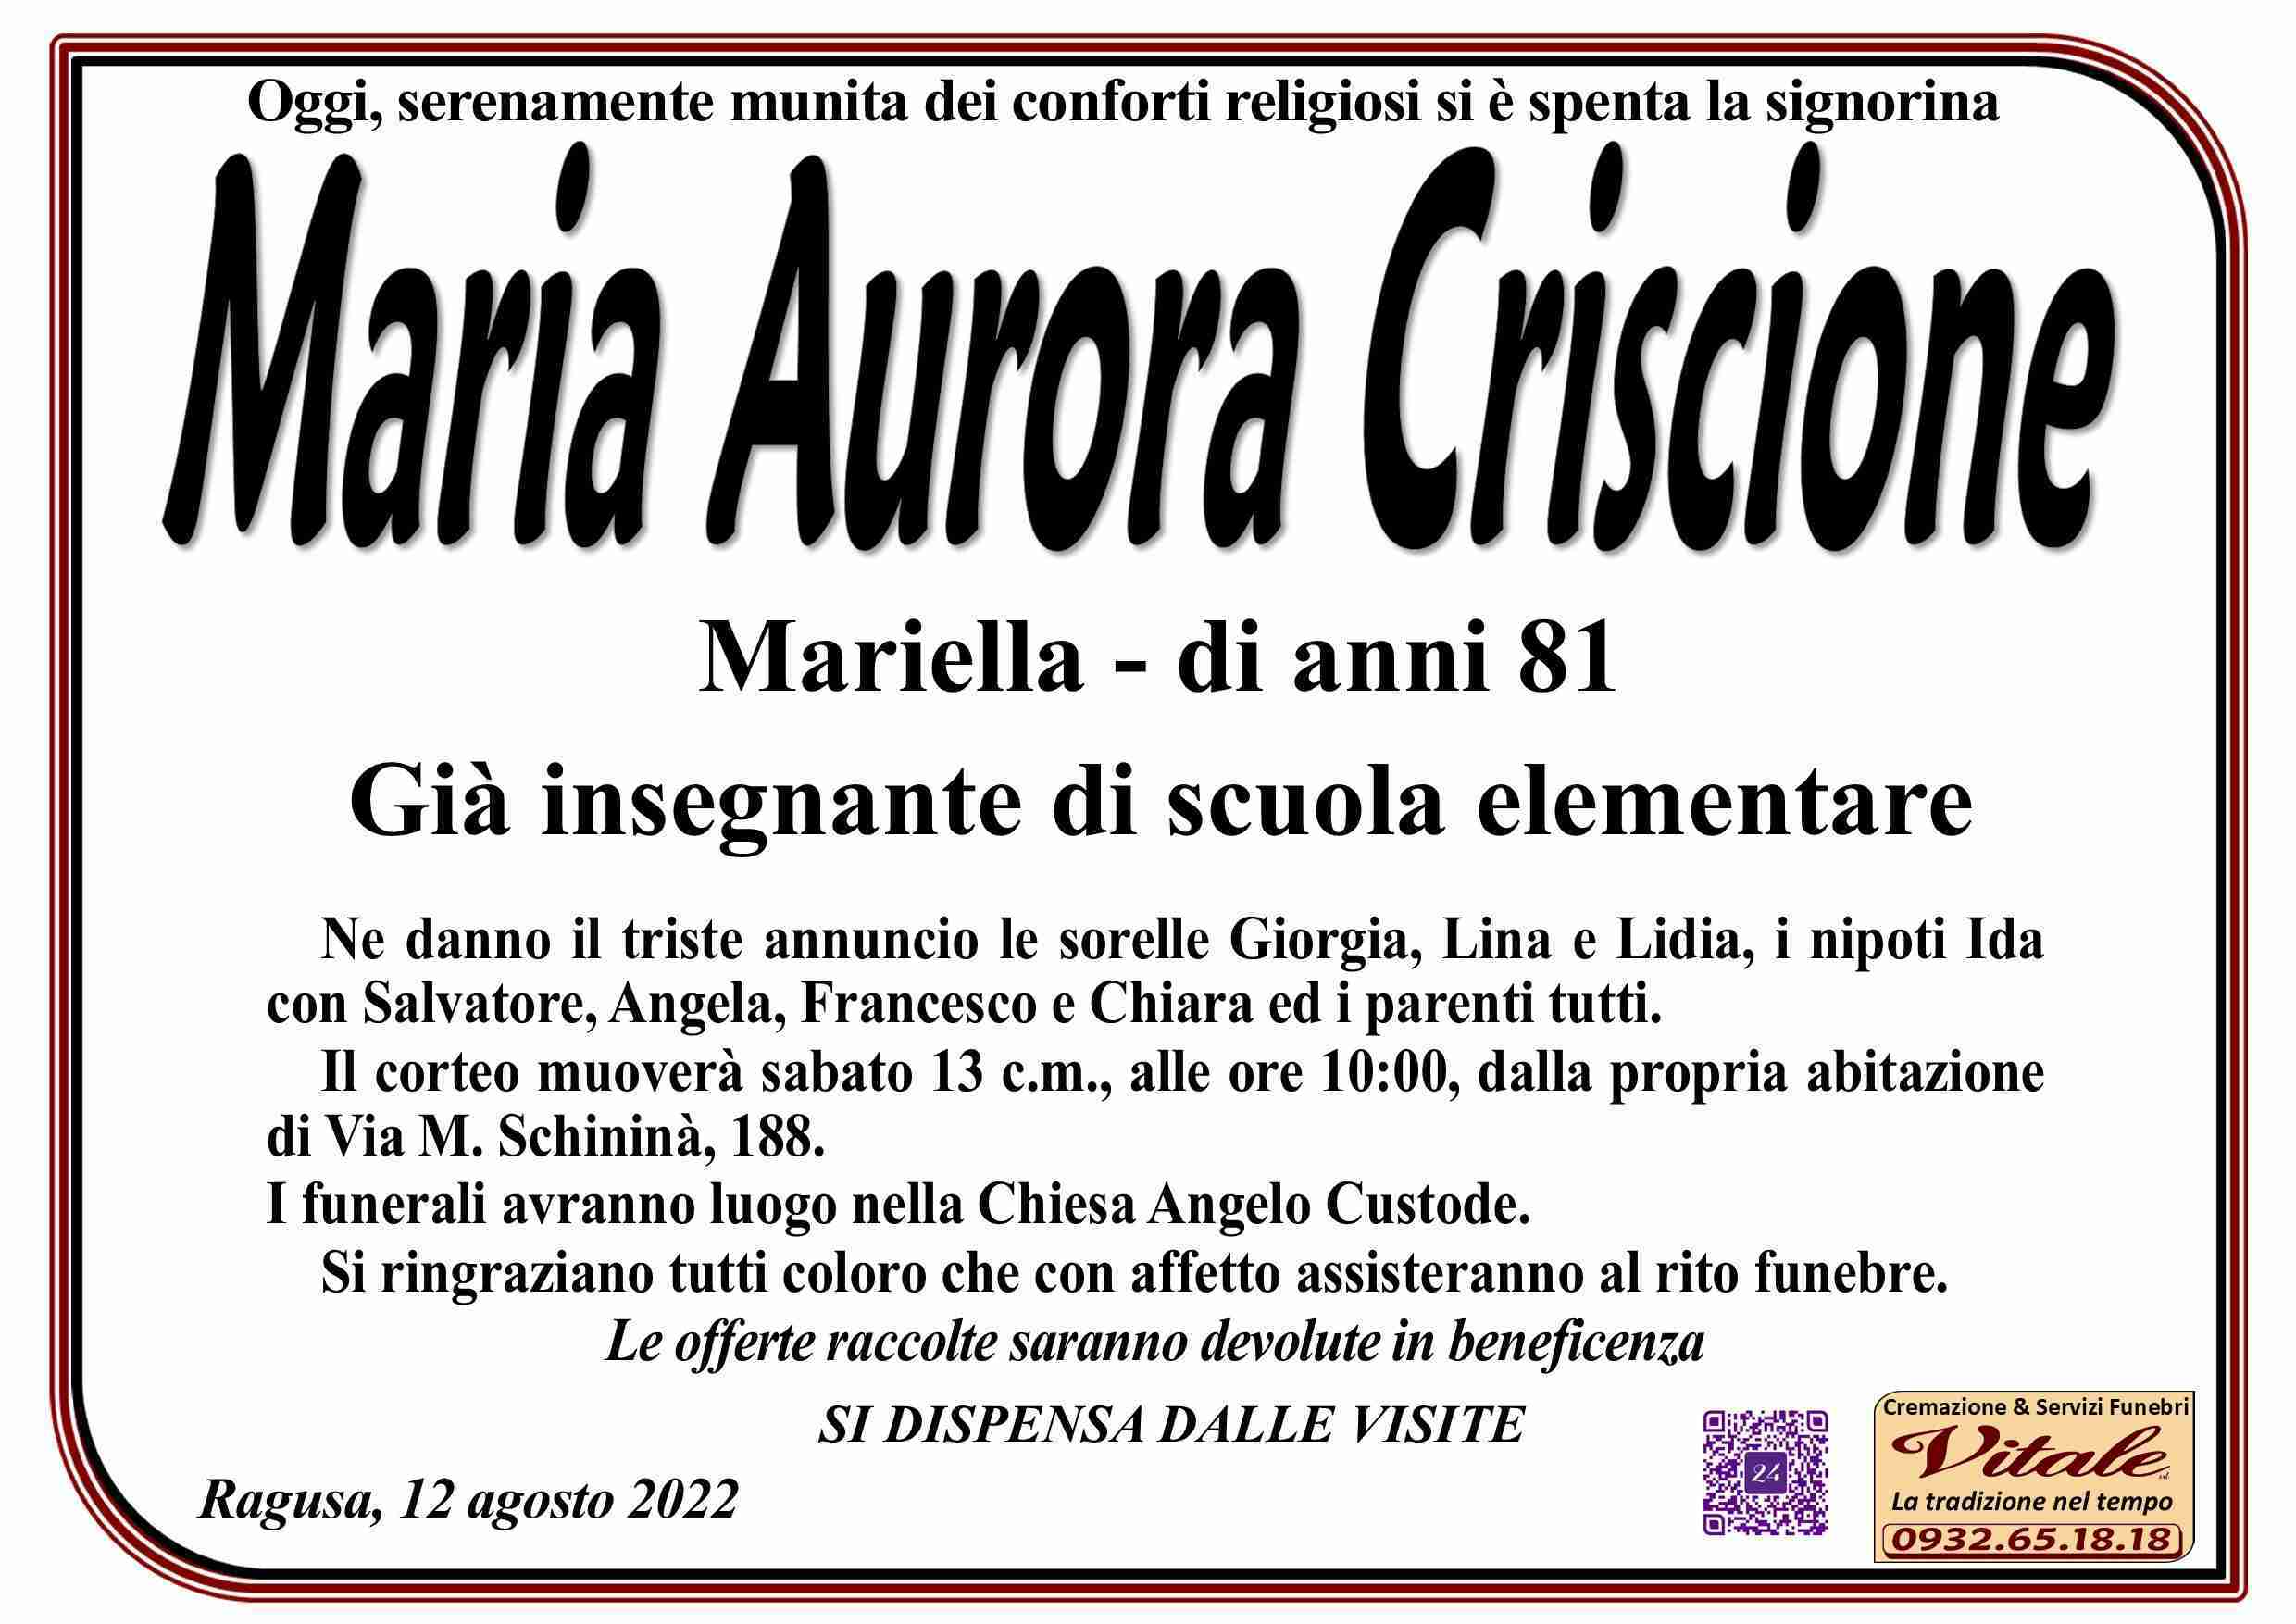 Maria Aurora Criscione